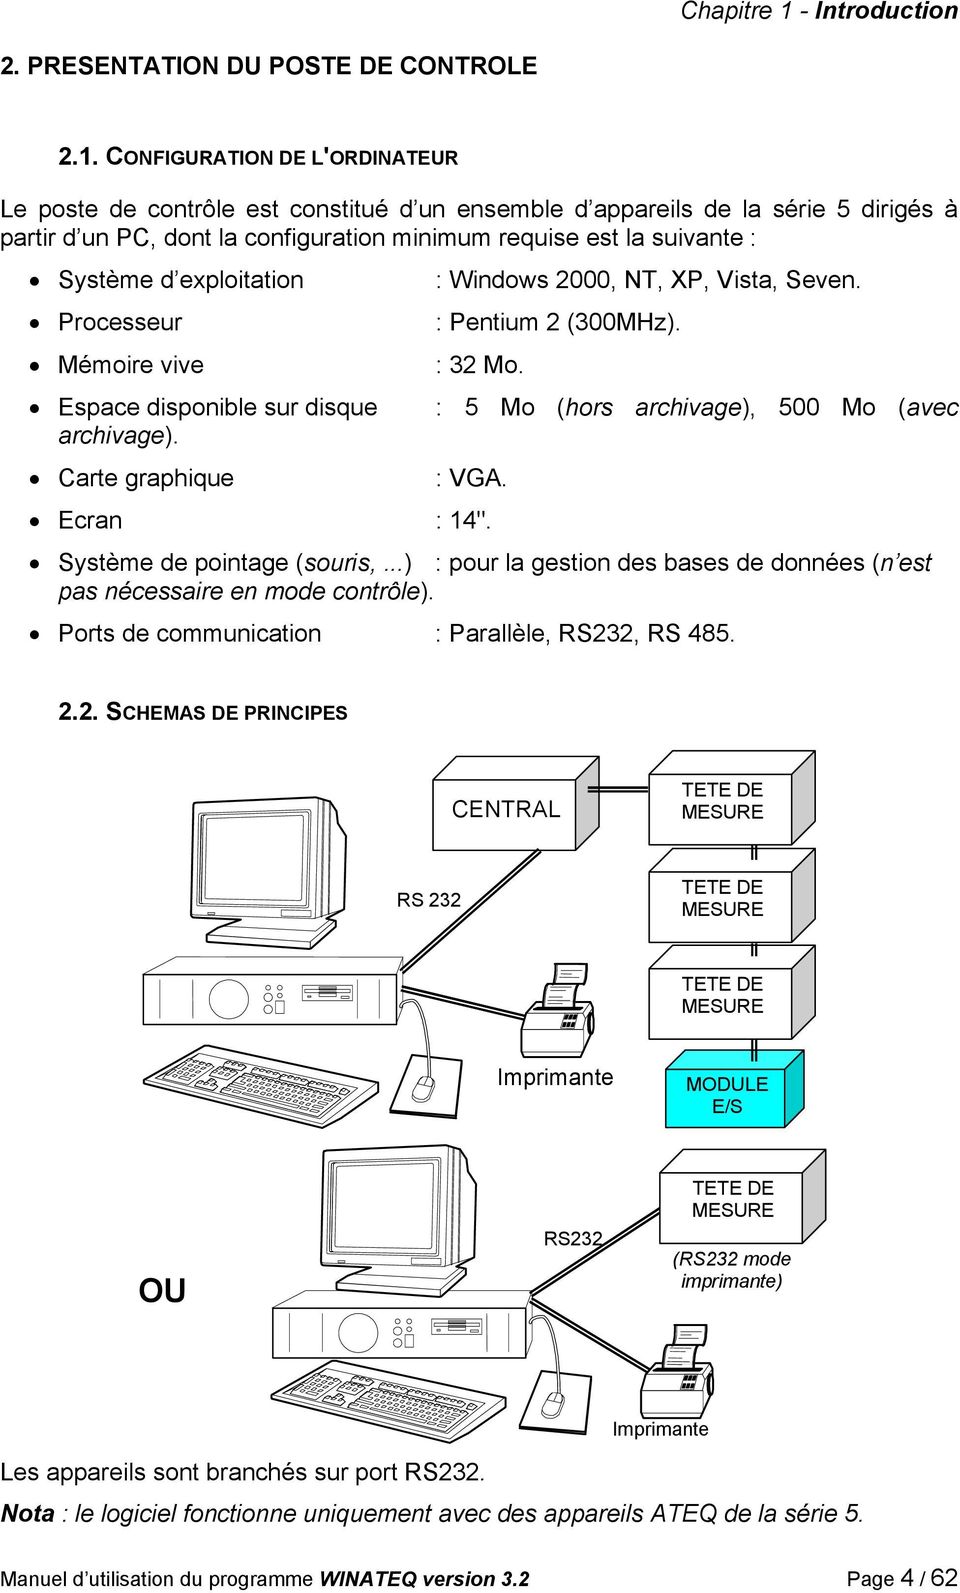 CONFIGURATION DE L'ORDINATEUR Le poste de contrôle est constitué d un ensemble d appareils de la série 5 dirigés à partir d un PC, dont la configuration minimum requise est la suivante : Système d